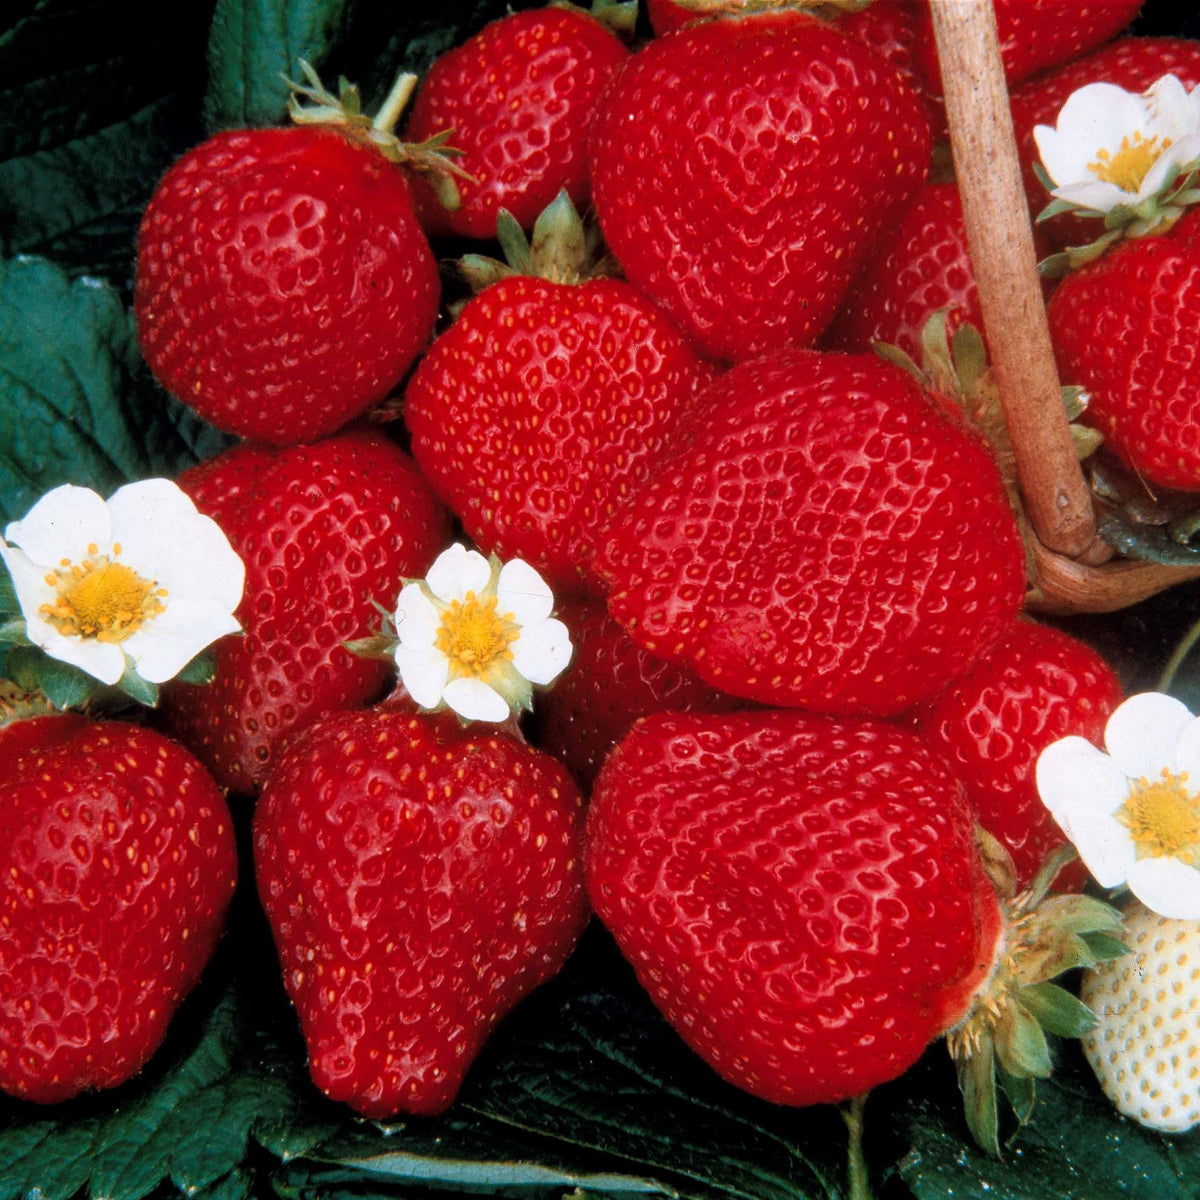 Collection de 60 fraises de 6 mois : Mara des Bois, Maestro, Gariguette - Fragaria 'mara des bois', 'maestro', 'gariguette' - Fruitiers Arbres et arbustes